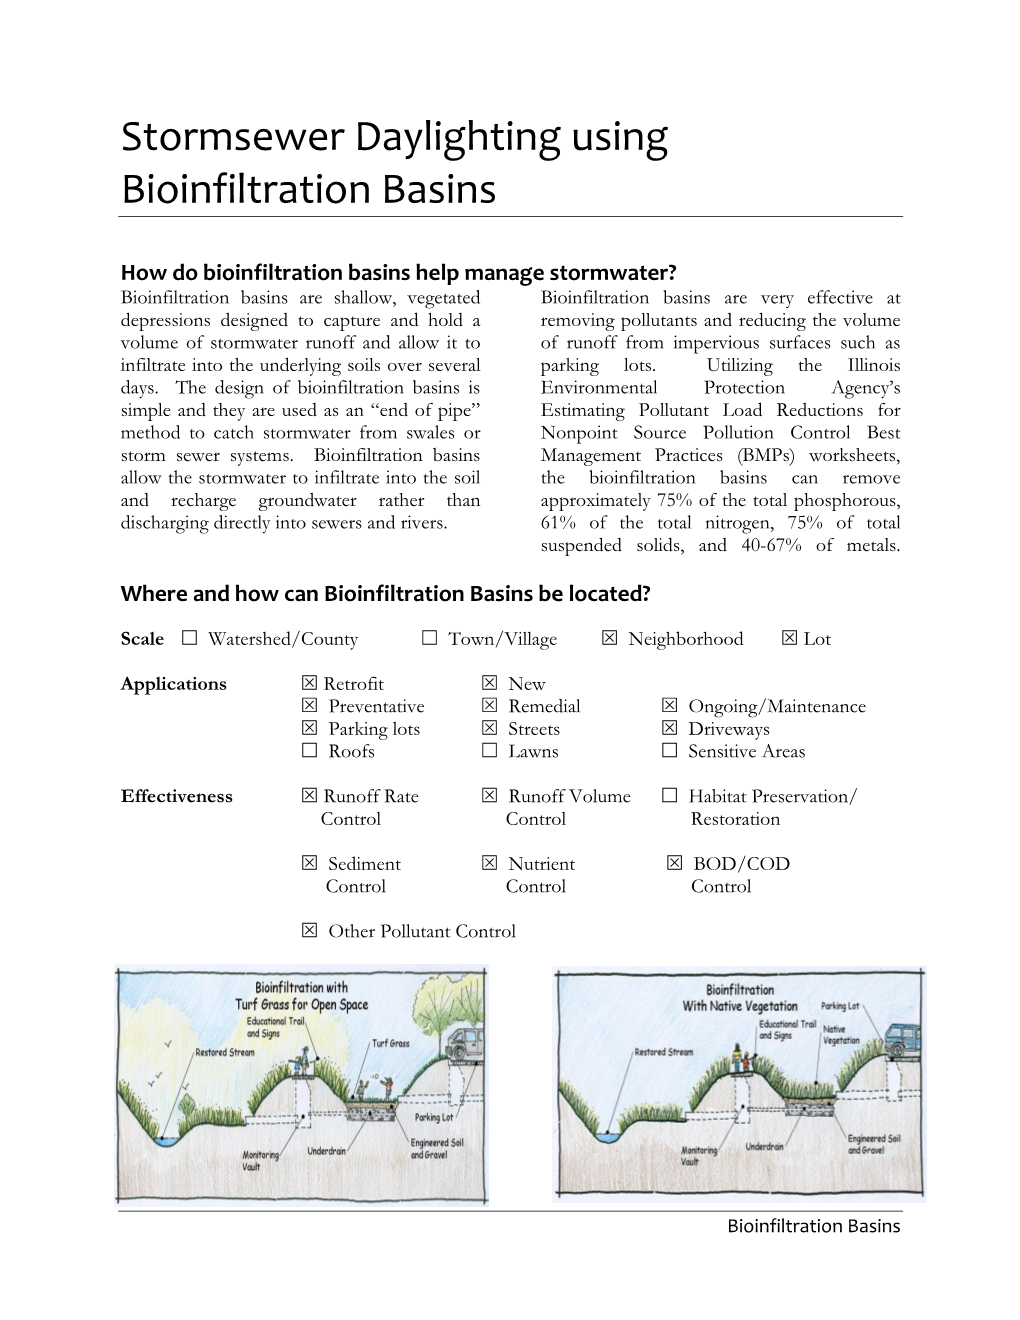 Stormsewer Daylighting Using Bioinfiltration Basins